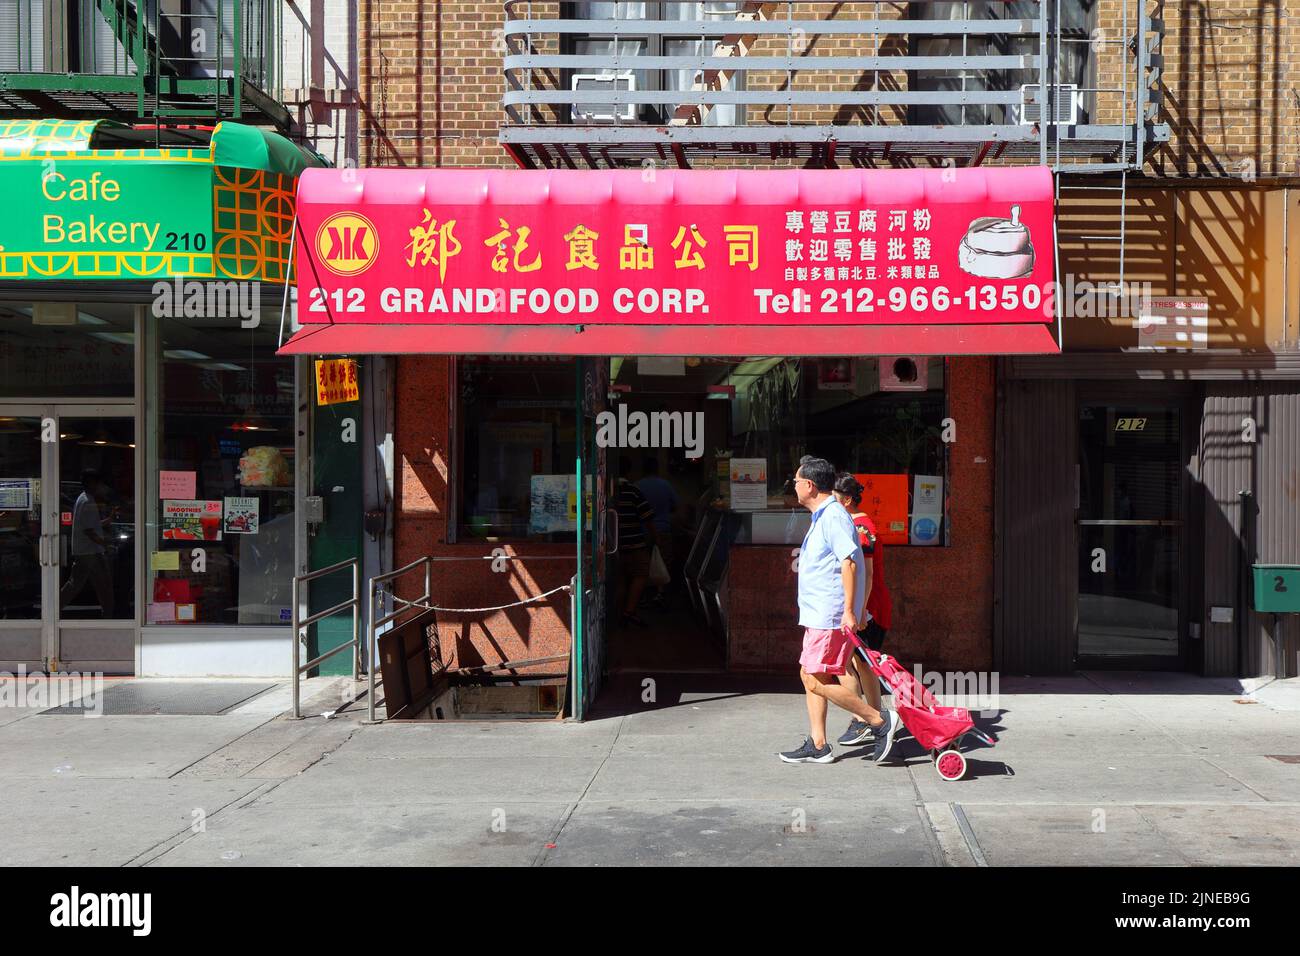 Kong Kee 鄺記食品公司, 212 Grand St, New York, NYC Schaufensterfoto eines frischen Tofu- und Reisnudelherstellers in Manhattan, Chinatown. Stockfoto